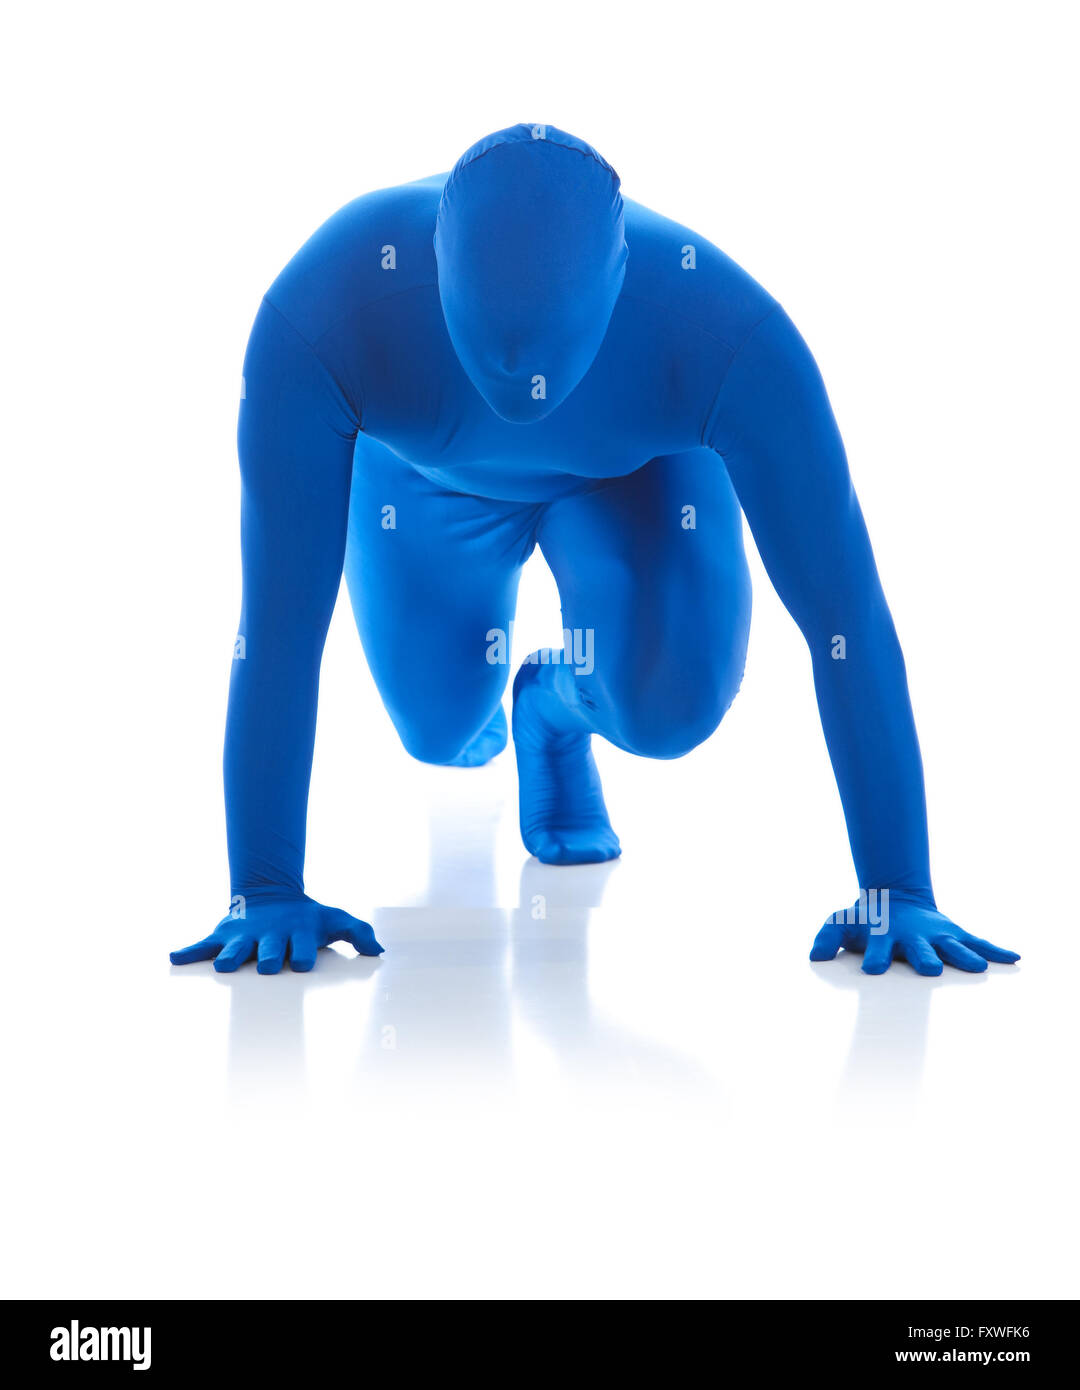 Serie mit einem Mann in einem blauen Body oder Morphsuit gekleidet.  Isoliert auf weißem Hintergrund.  Gut für Situationen, wo eine Anonymou Stockfoto